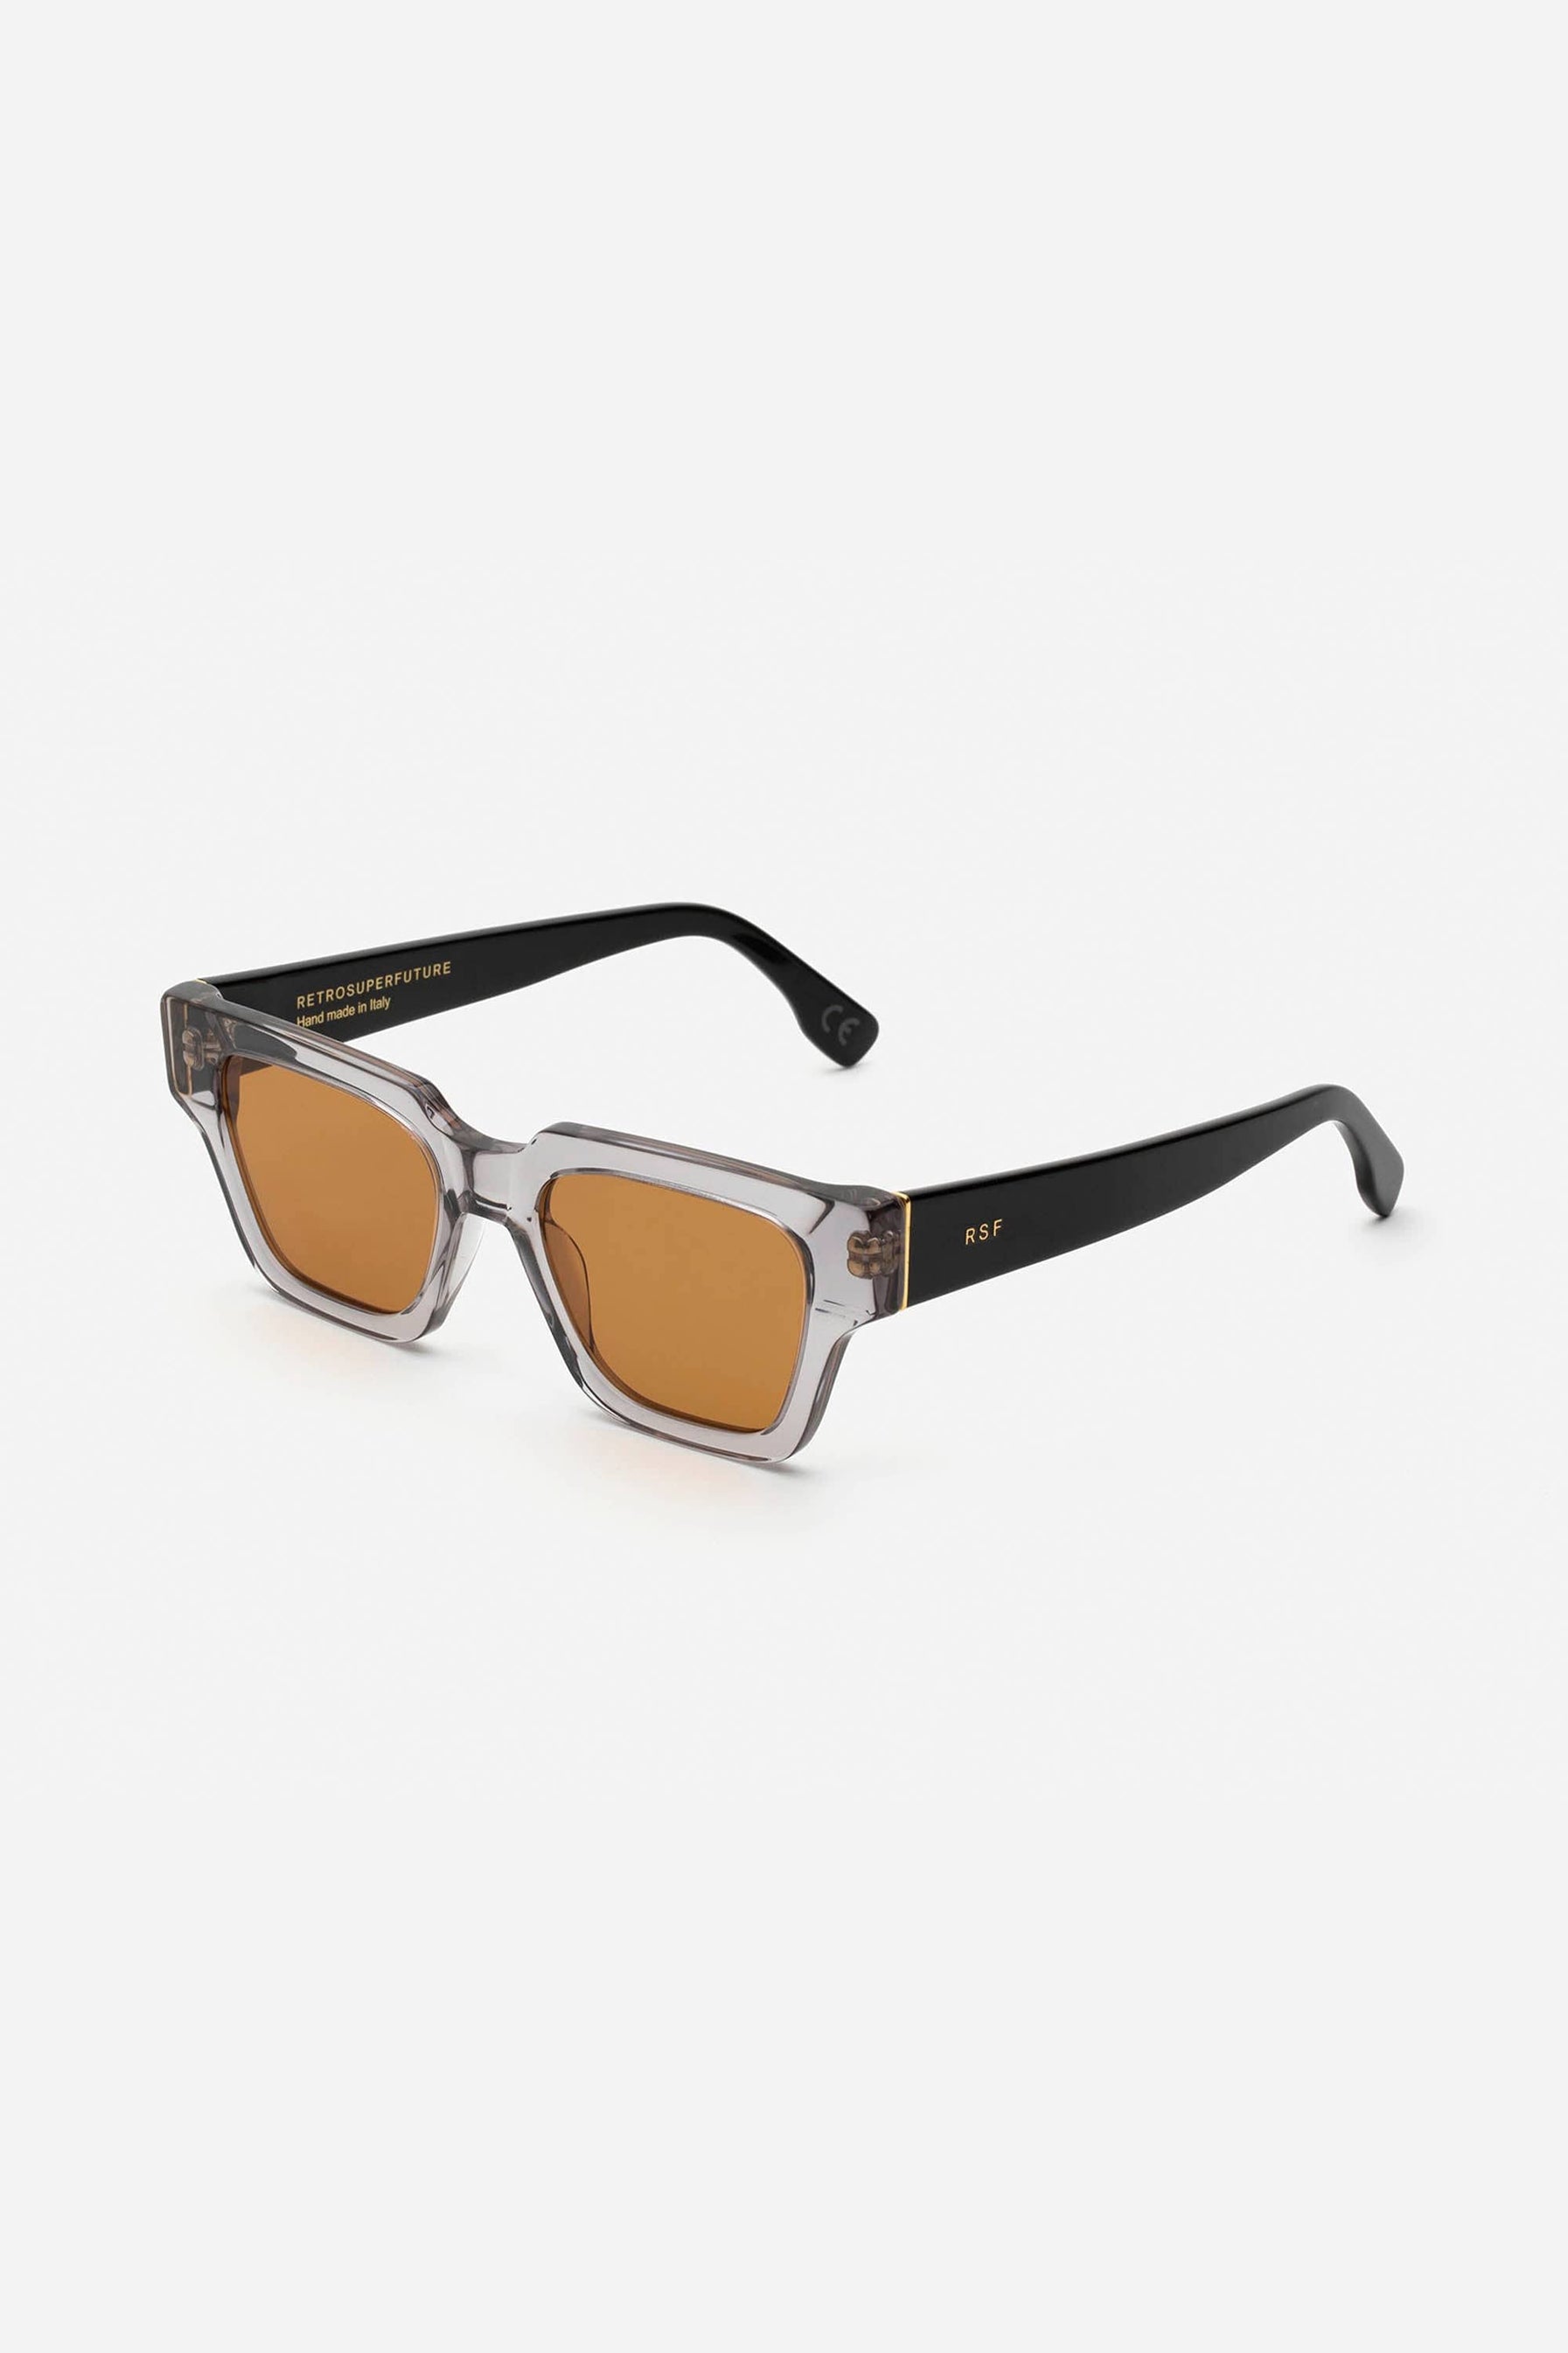 Retrosuperfuture pooch storia crystal grey sunglasses - Eyewear Club